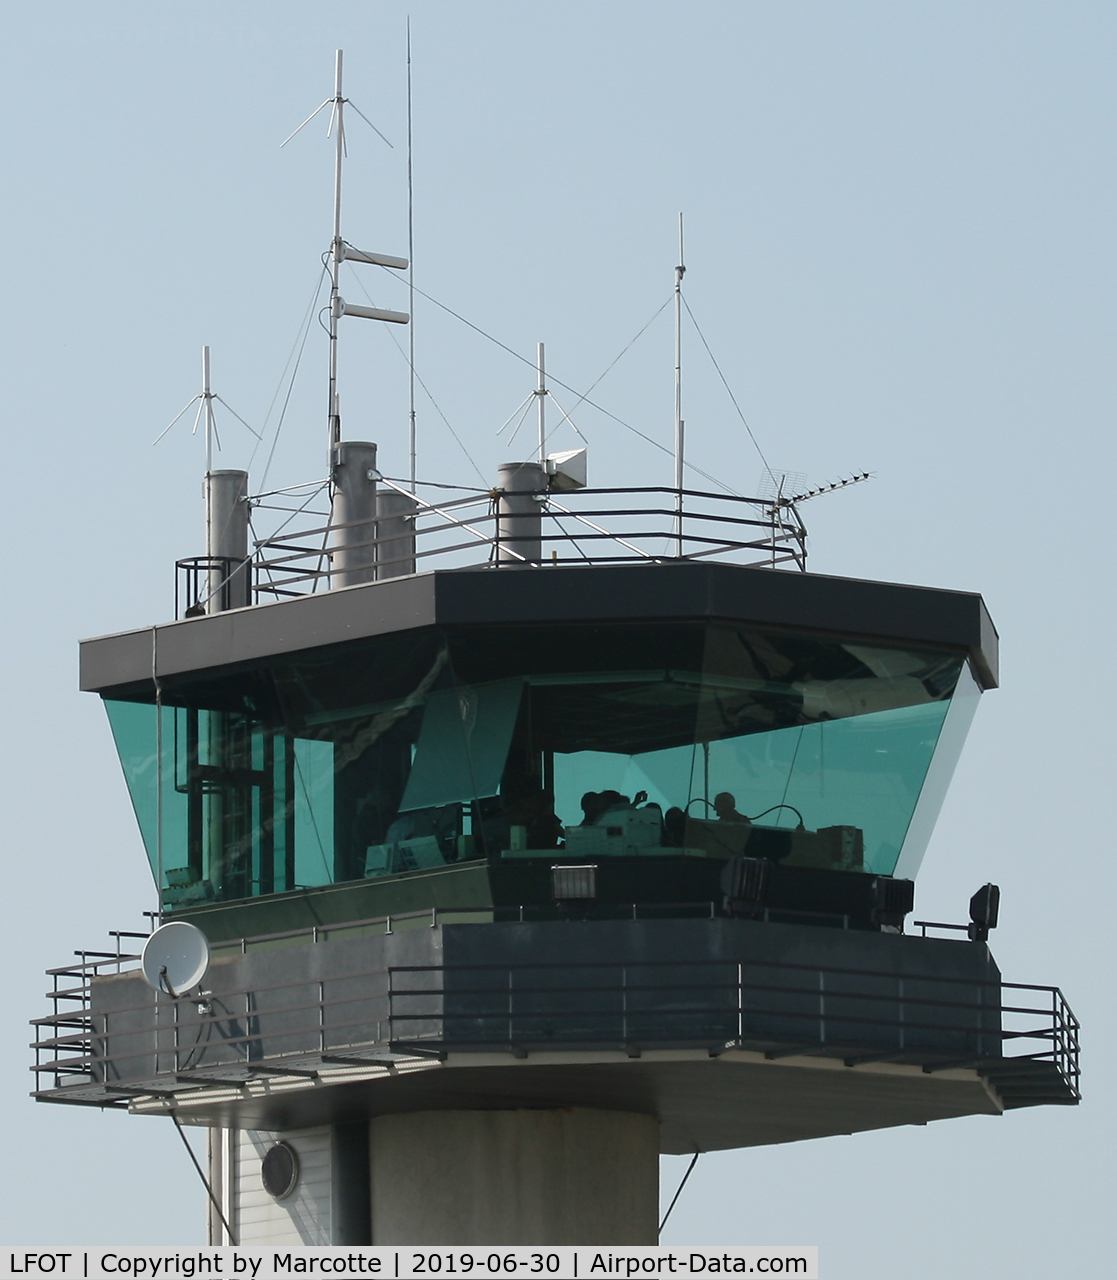 Tours Val de Loire Airport, Tours France (LFOT) - Civilian control tower.